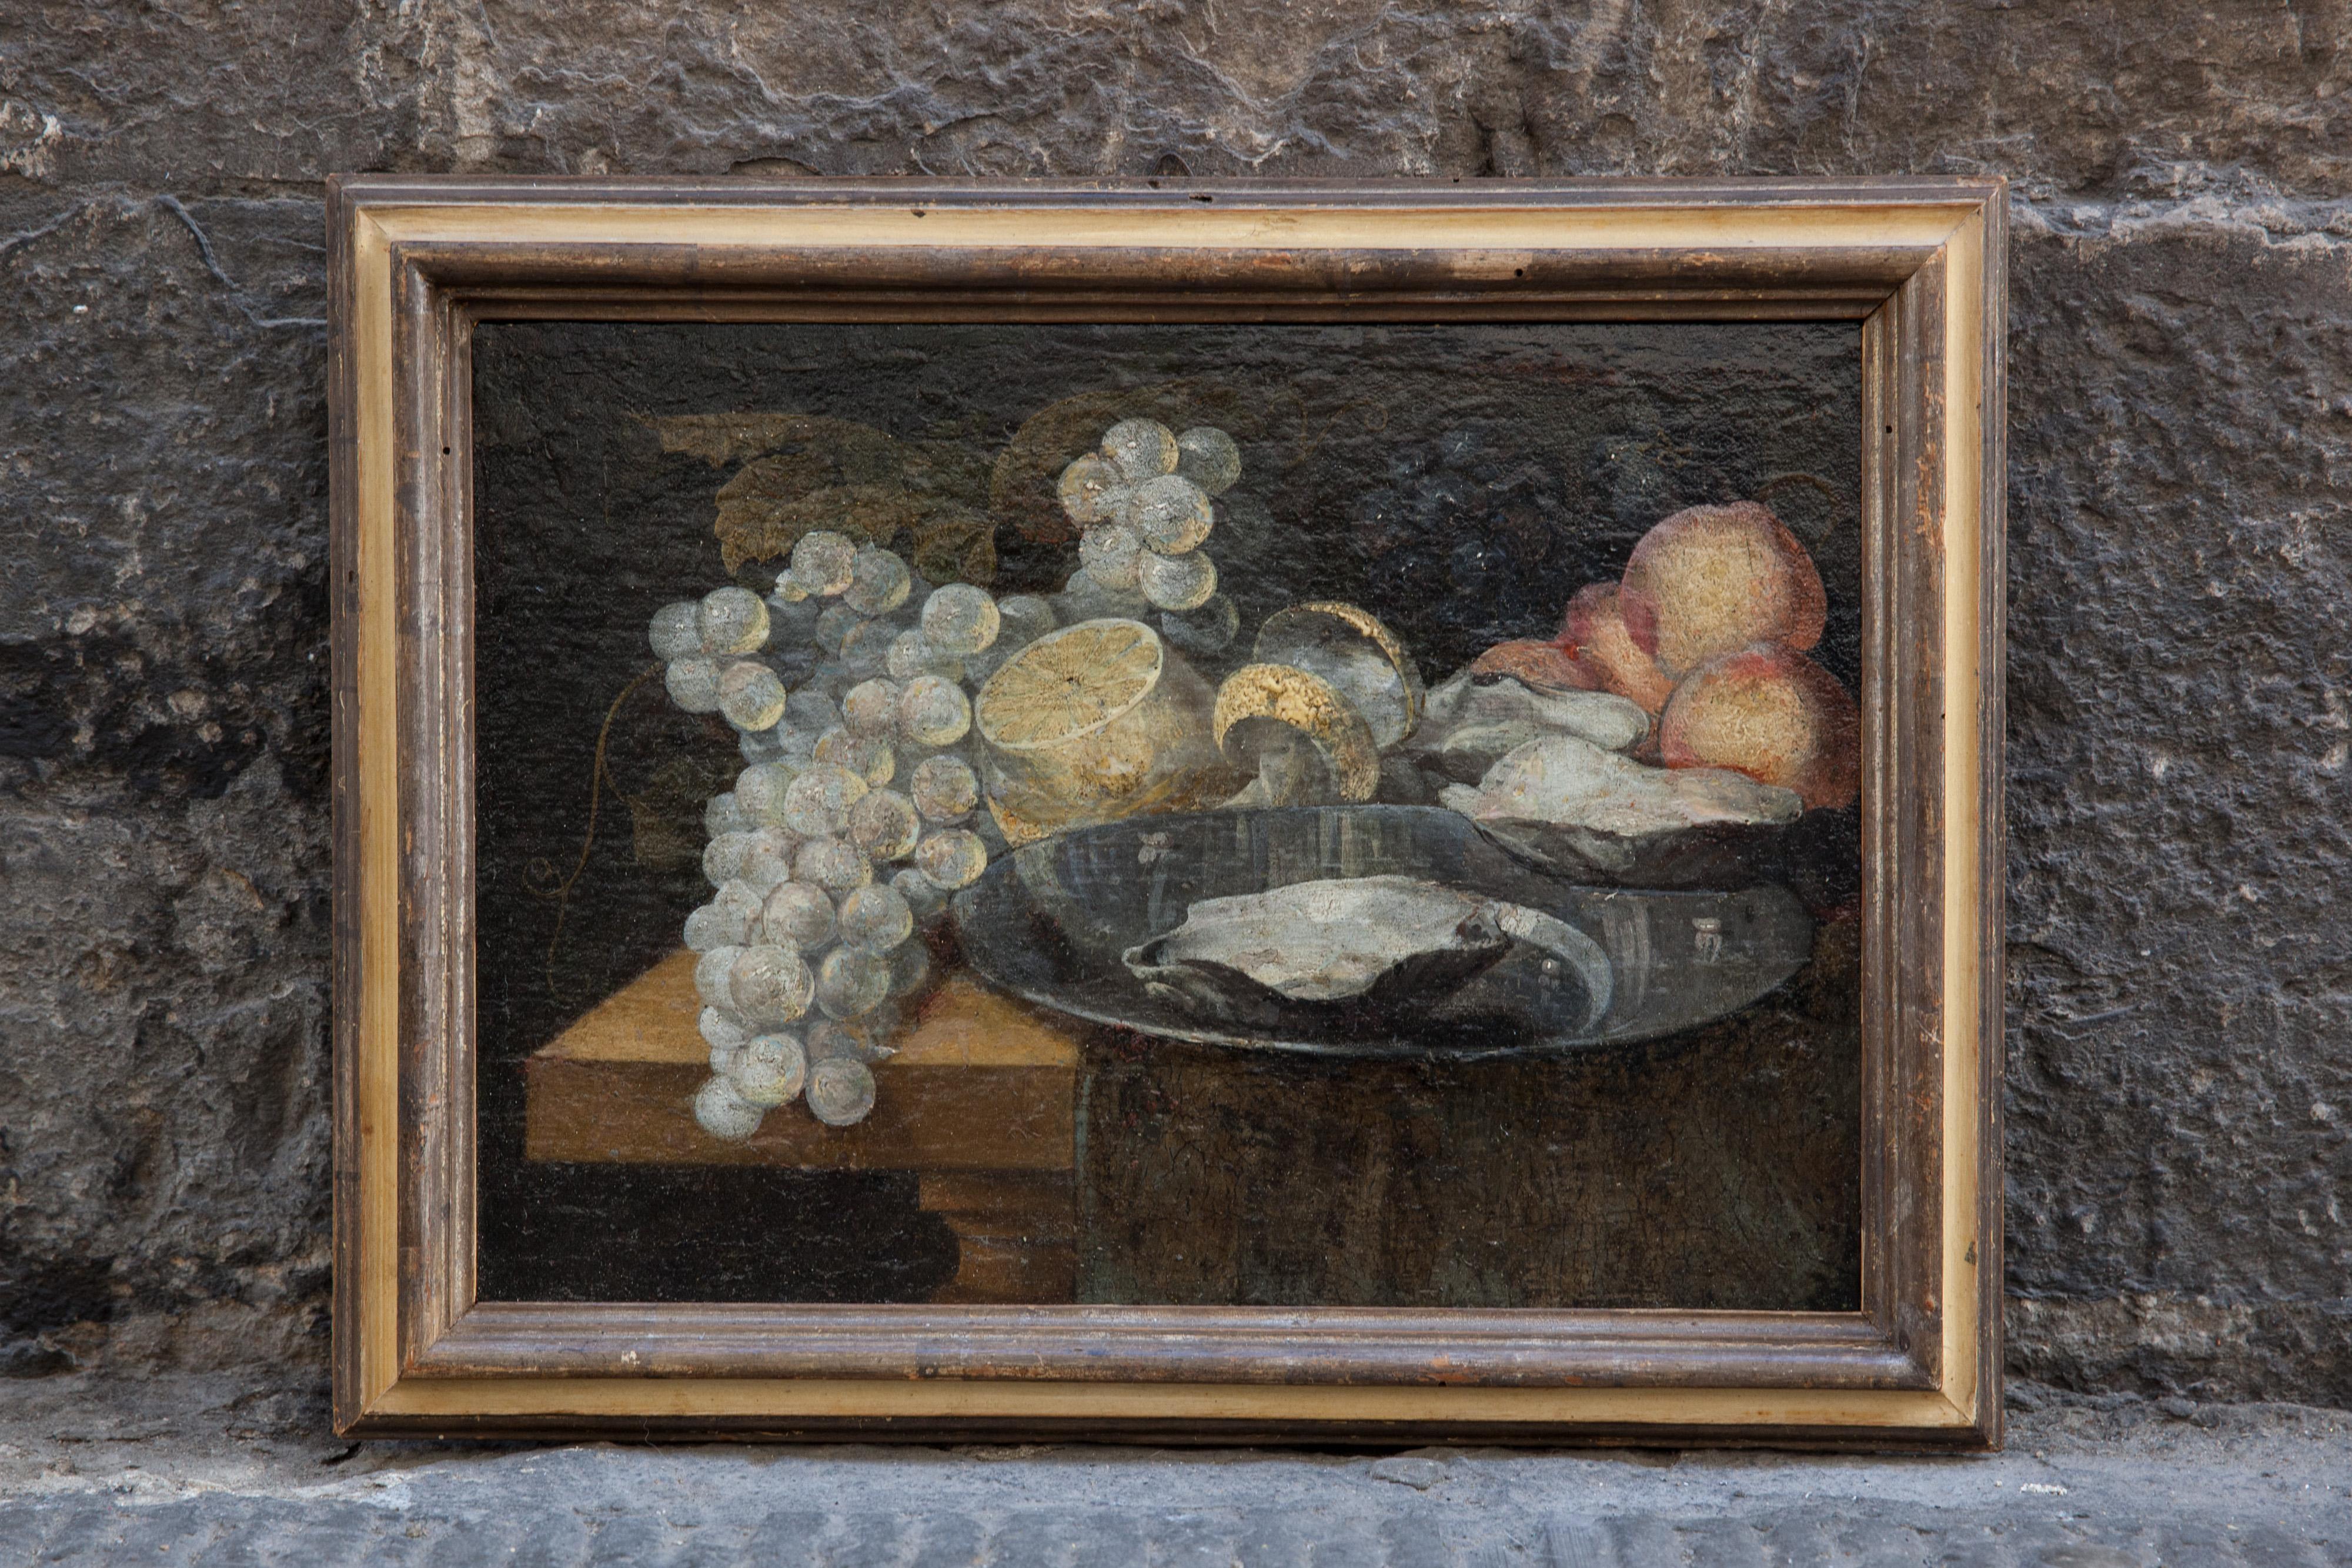 Natura morta con uva, ostriche, limone. Circa 1700.  - Painting by Unknown